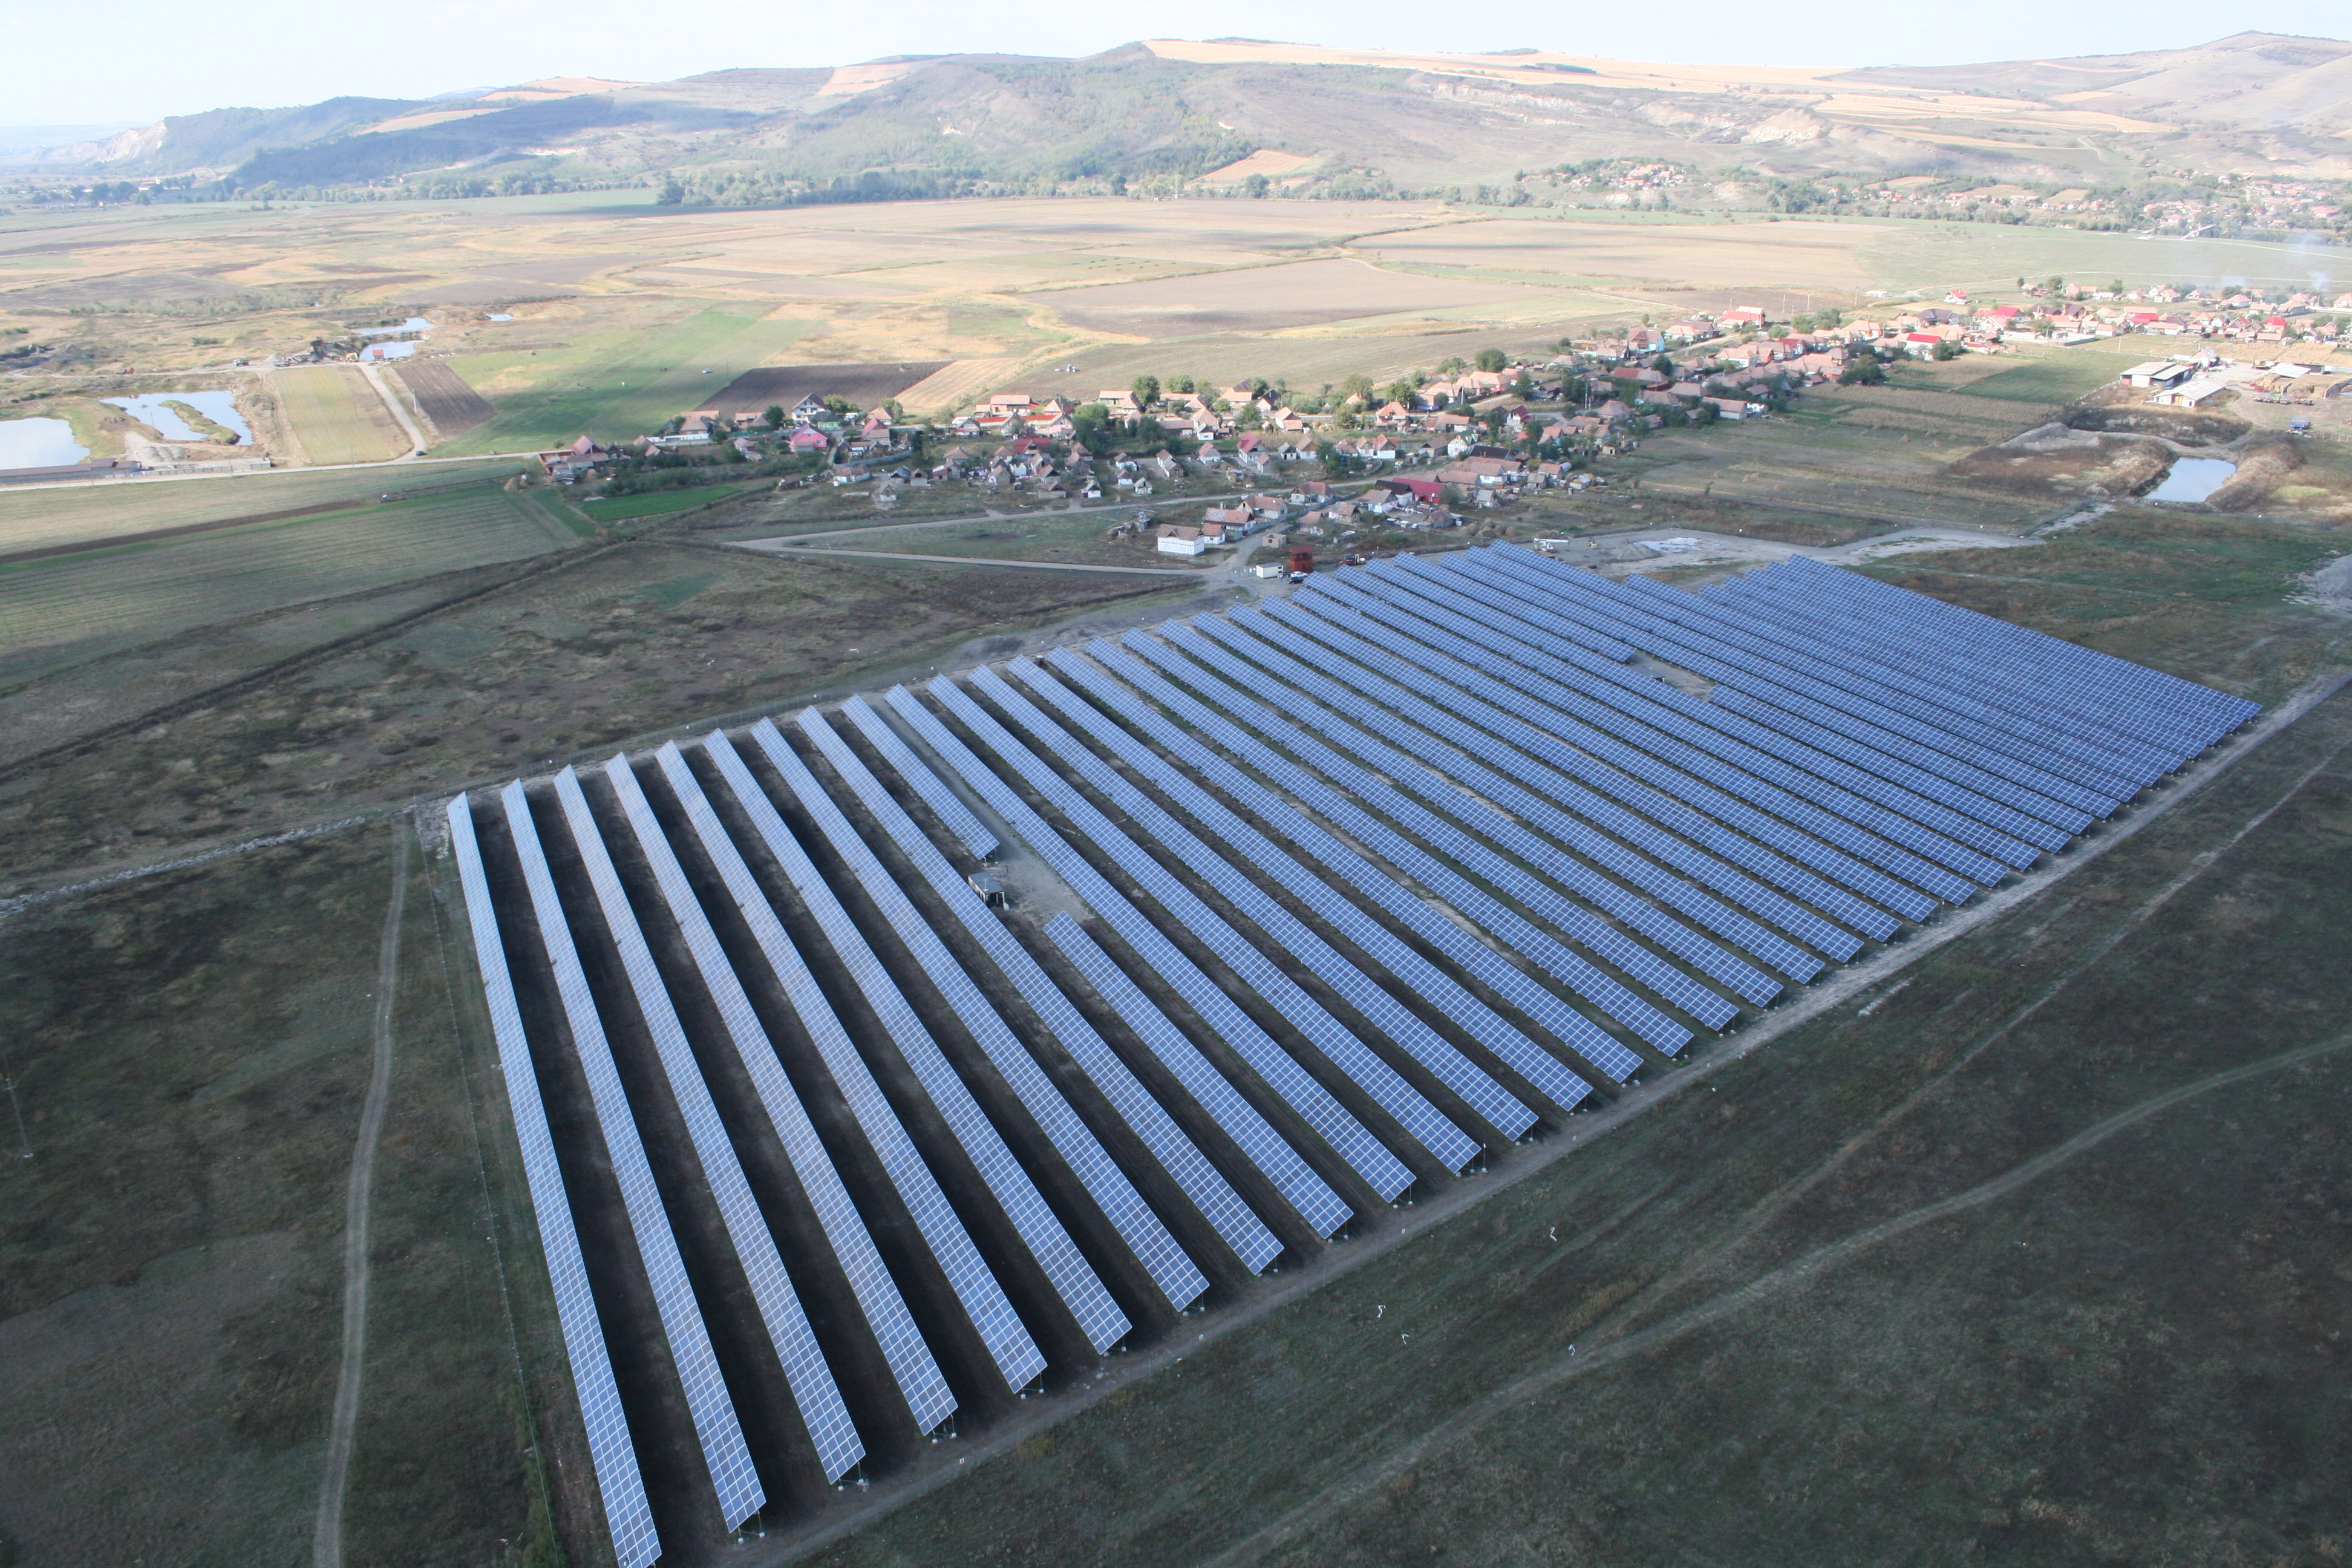 Peste 50 de proiecte de parcuri fotovoltaice, înregistrate la autorităţile de mediu din Arad